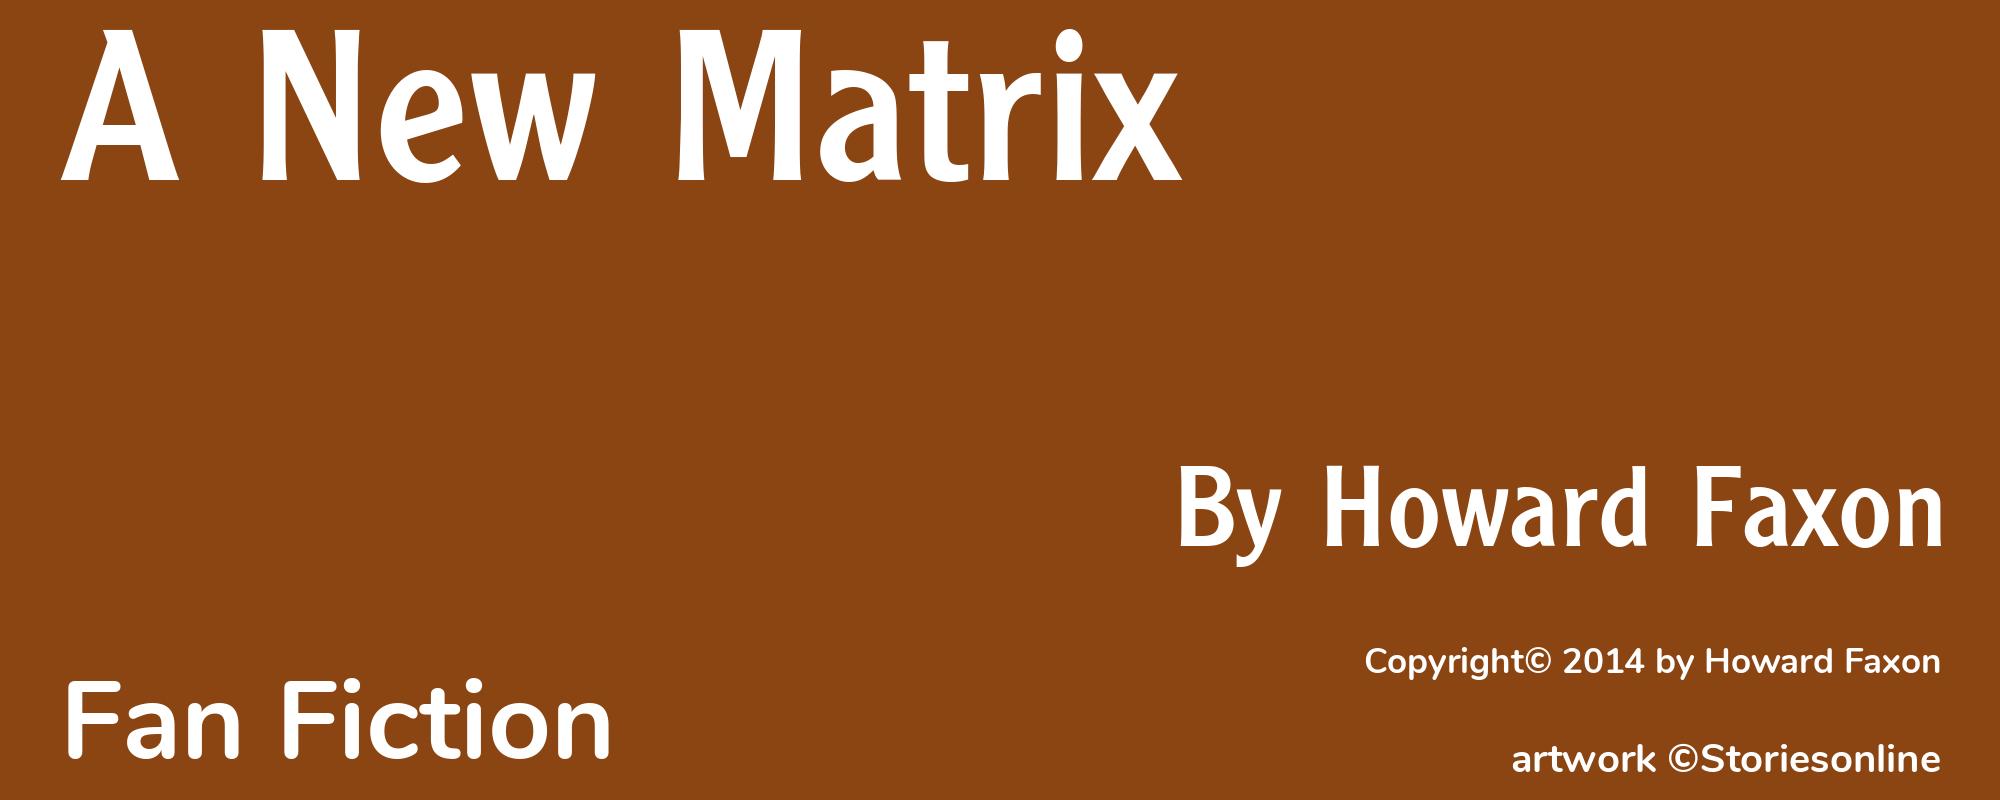 A New Matrix - Cover